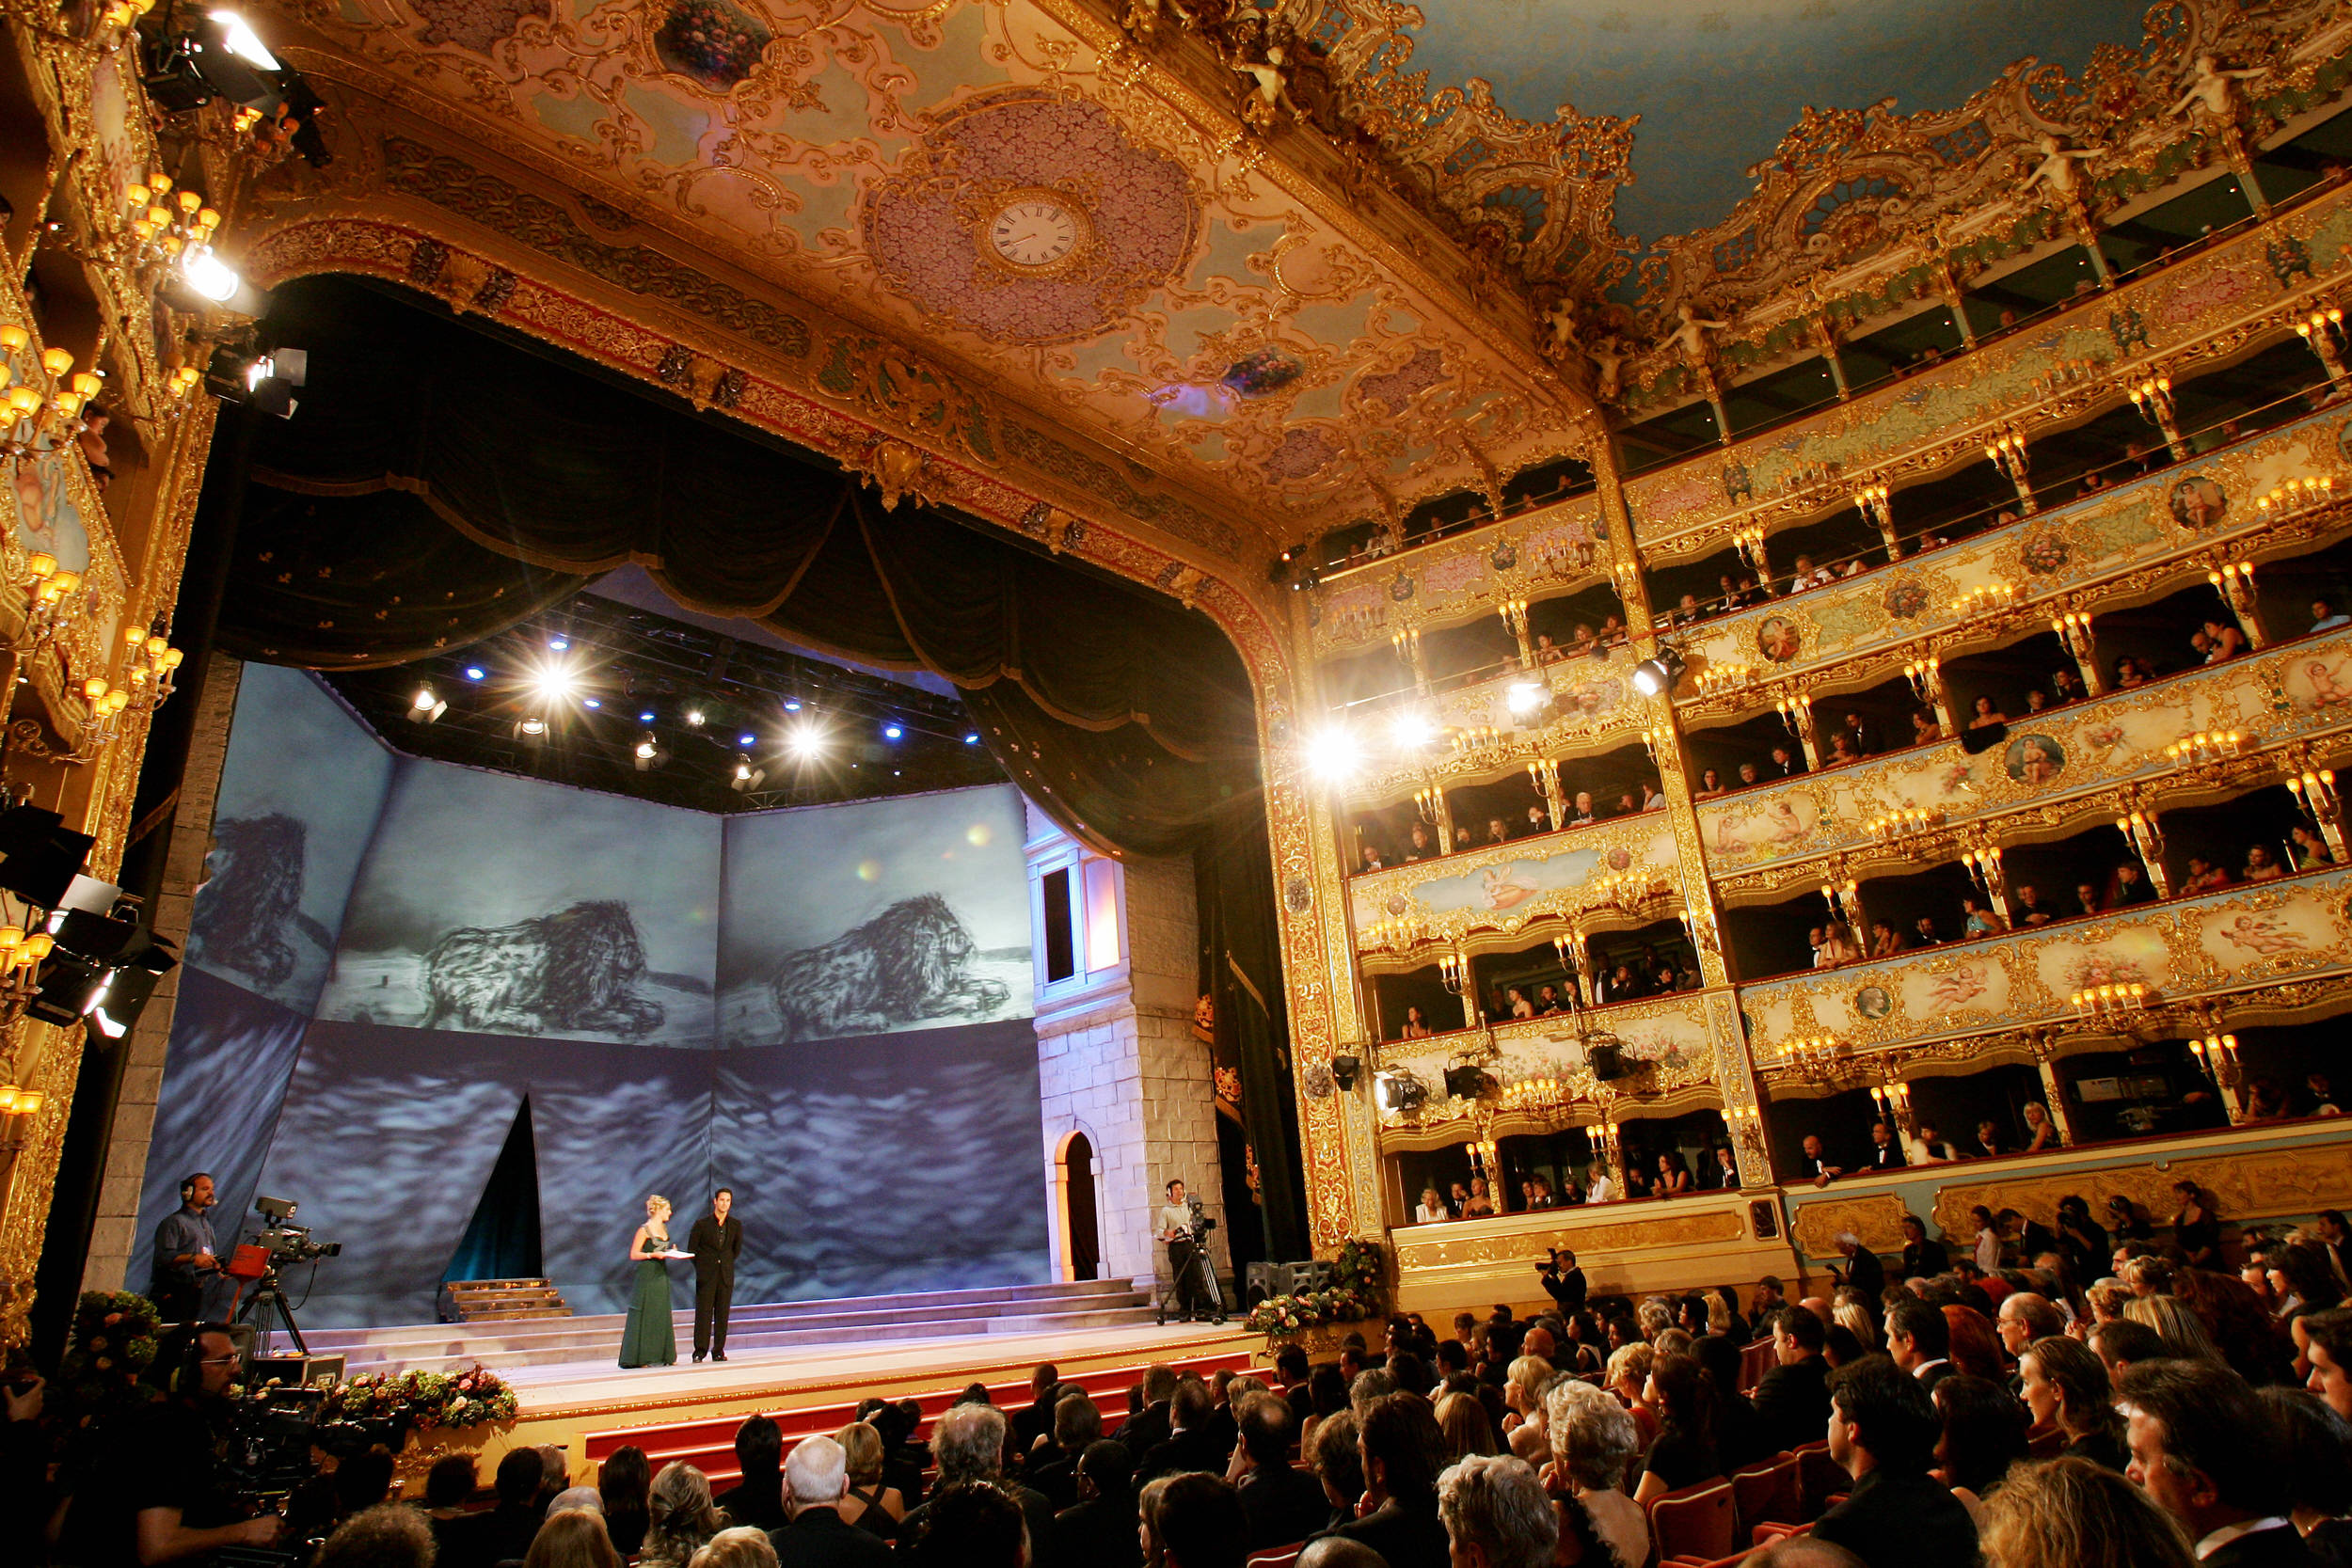 Capodanno 2015 al Teatro la Fenice di Venezia: il programma